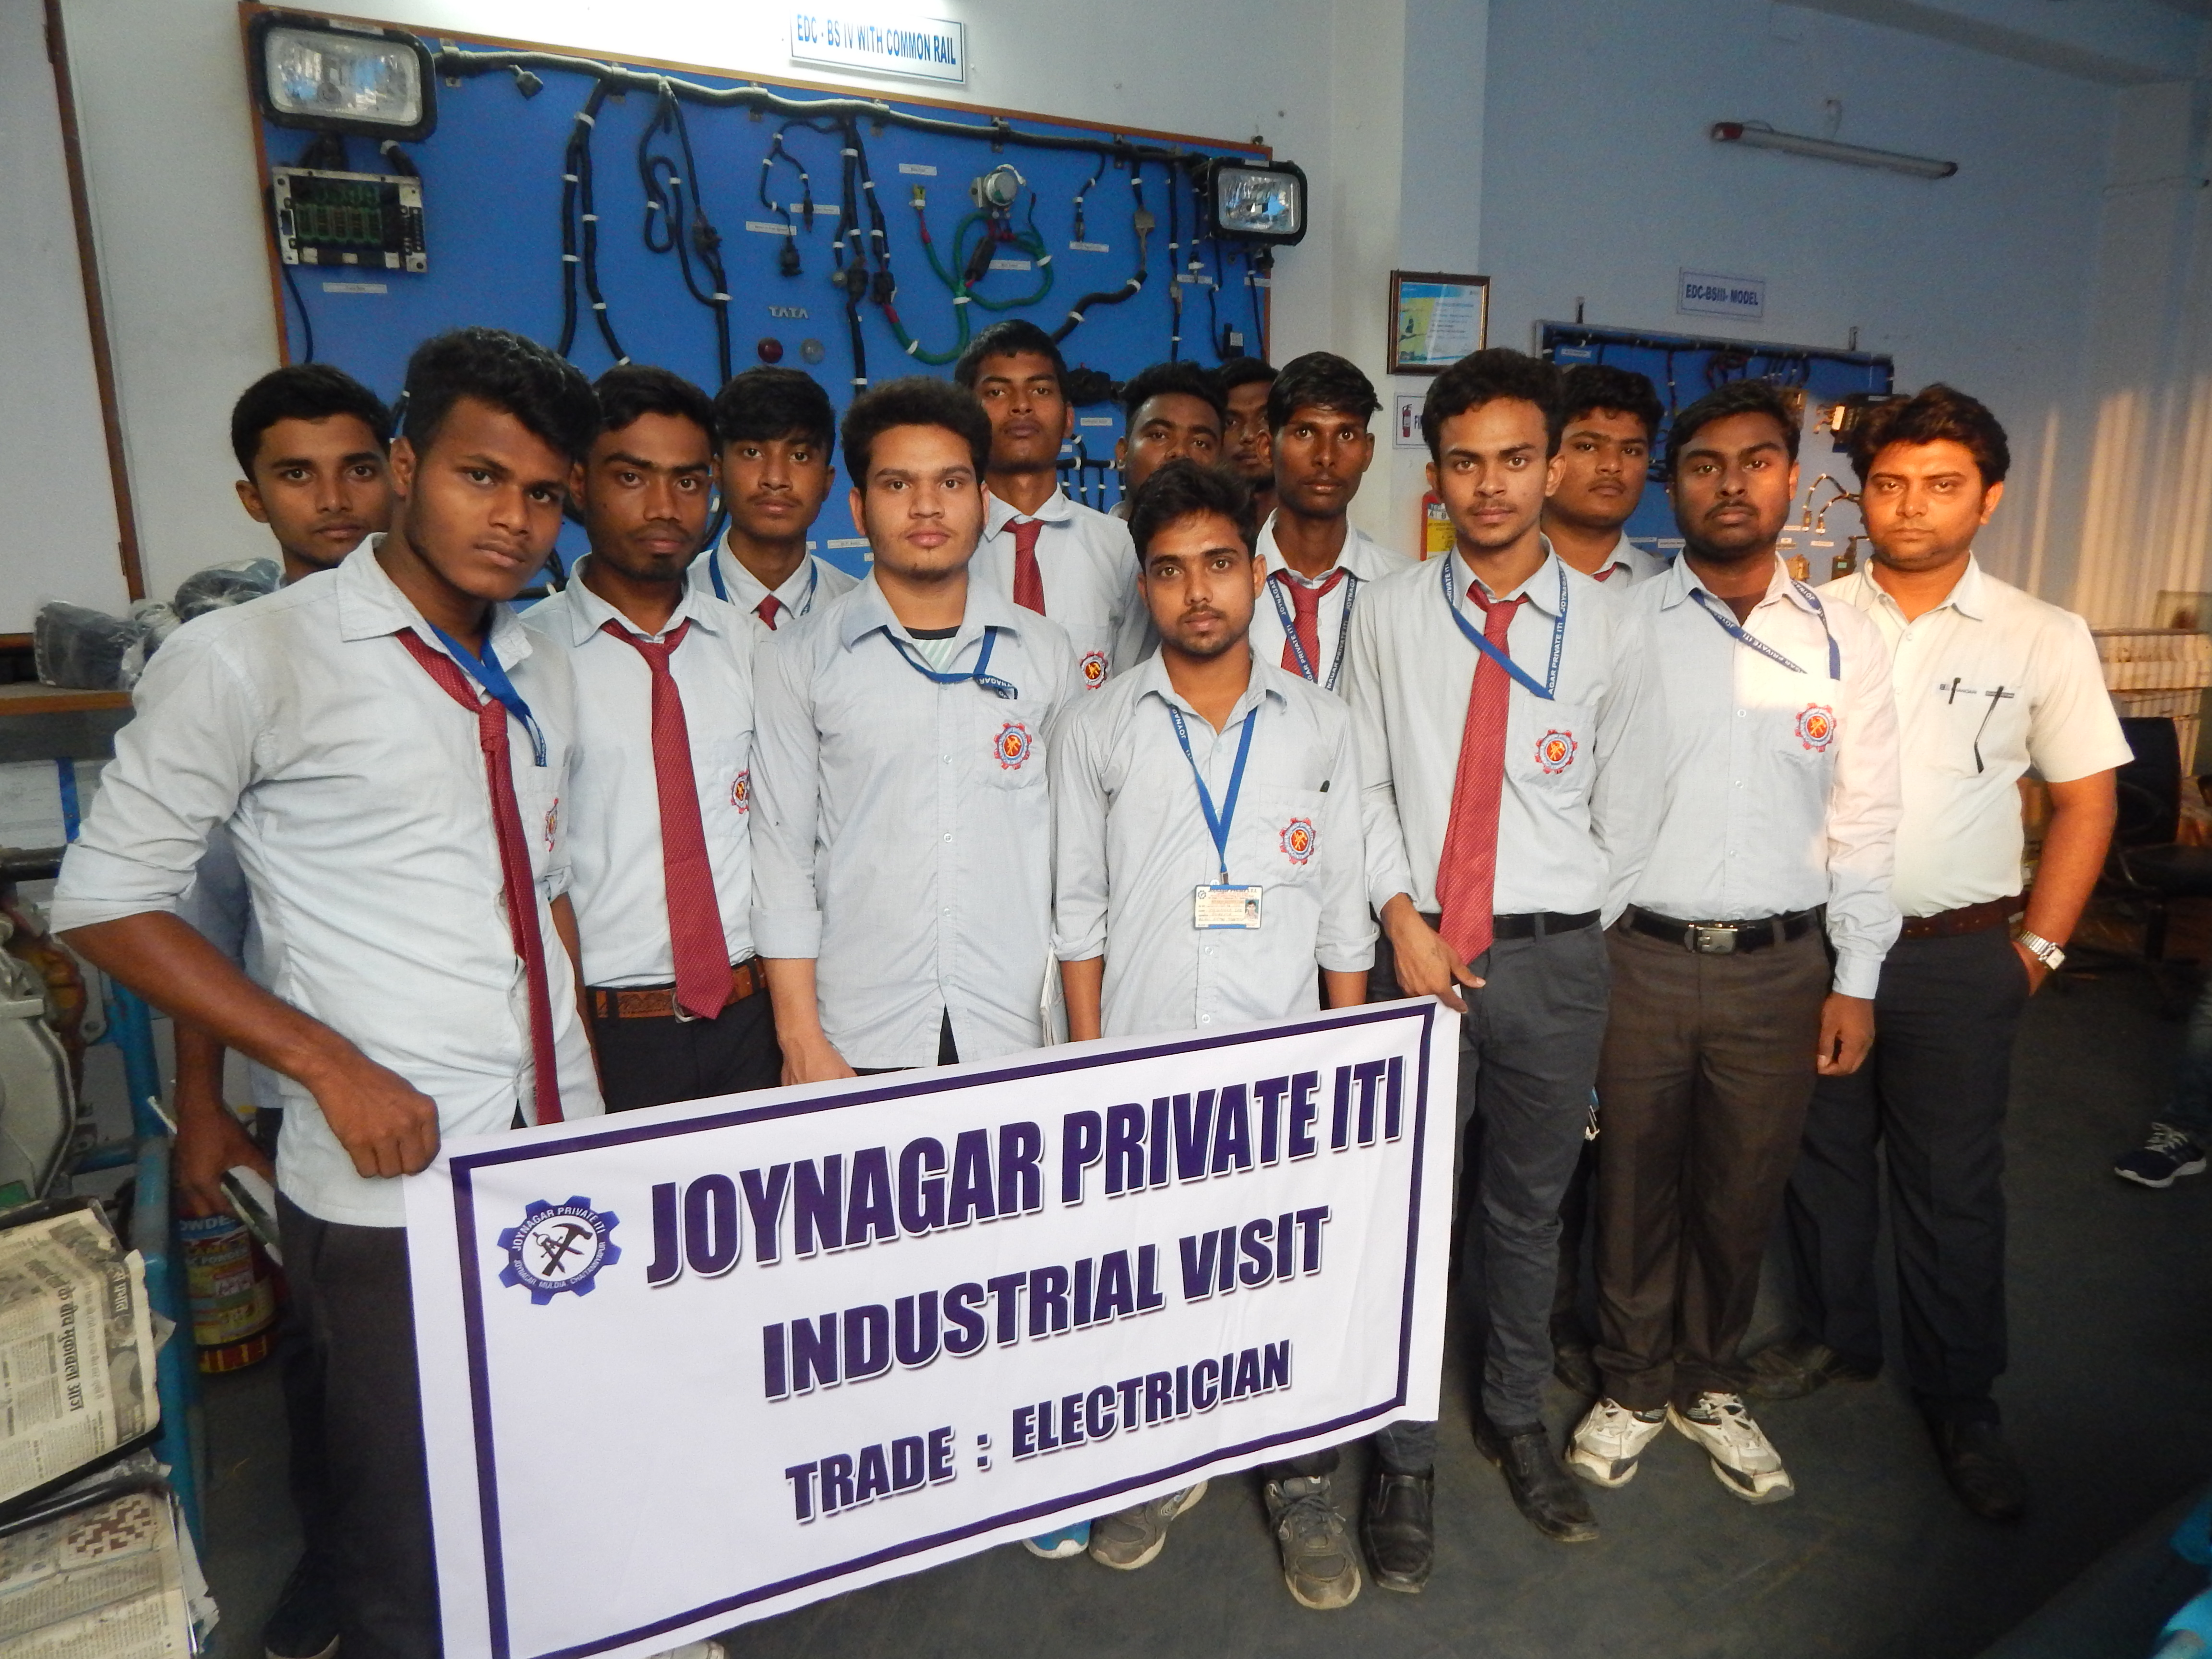 INDUSTRIAL VISIT AT BHANDARI  AUTOMOBILE PVT LTD